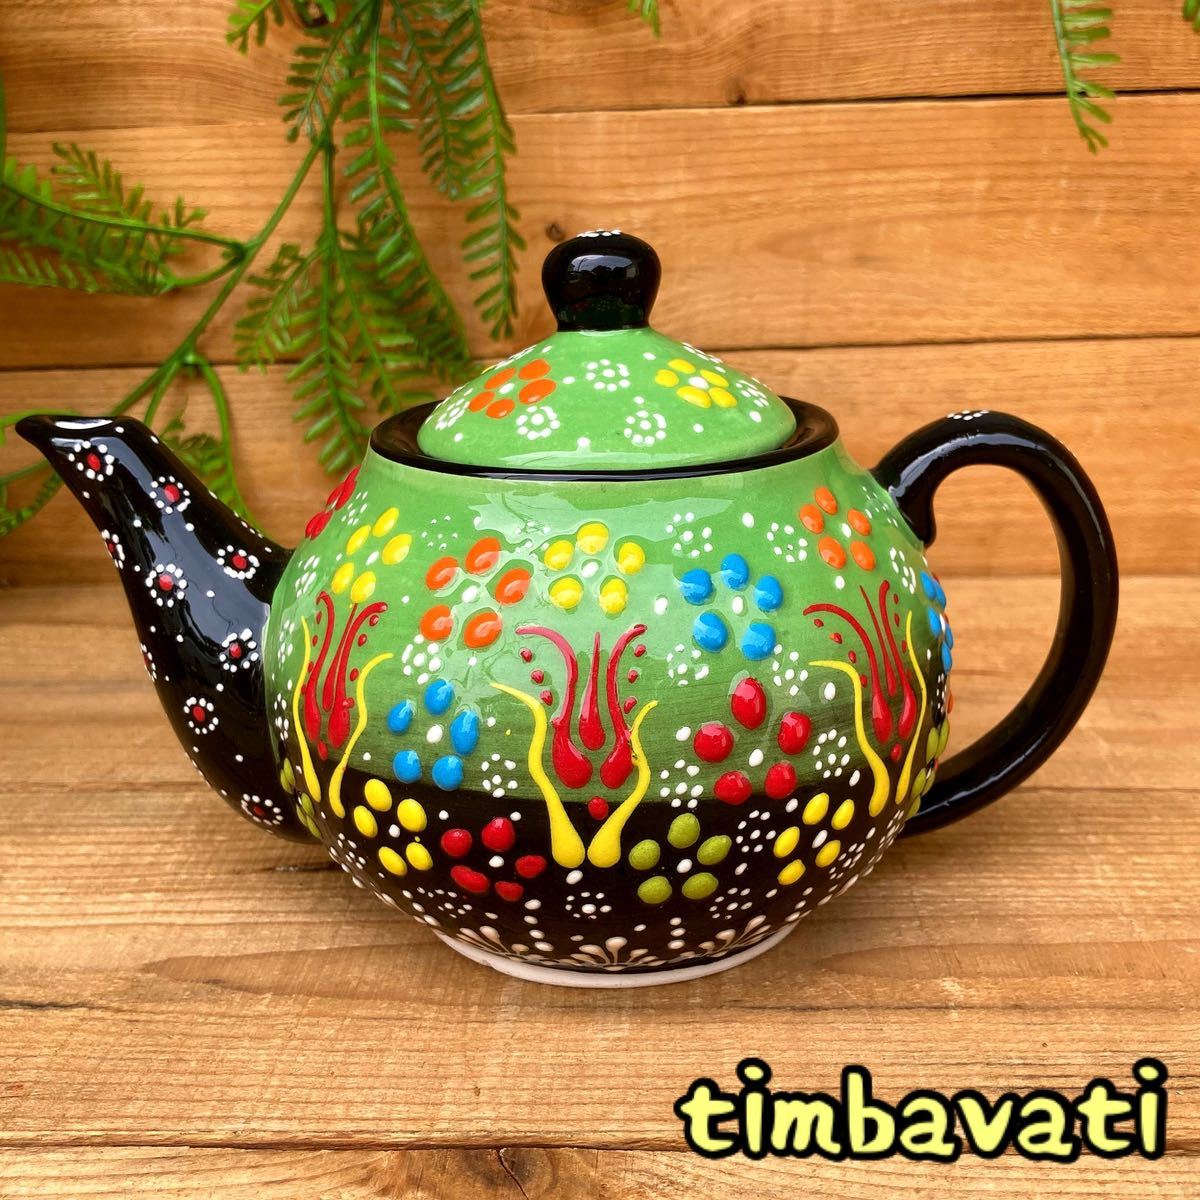 20cm☆Nuevo☆ Tetera de cerámica turca *Verde claro* Cerámica Kyutahya hecha a mano [Envío gratis con condiciones] 114, vajilla occidental, utensilios de té, maceta